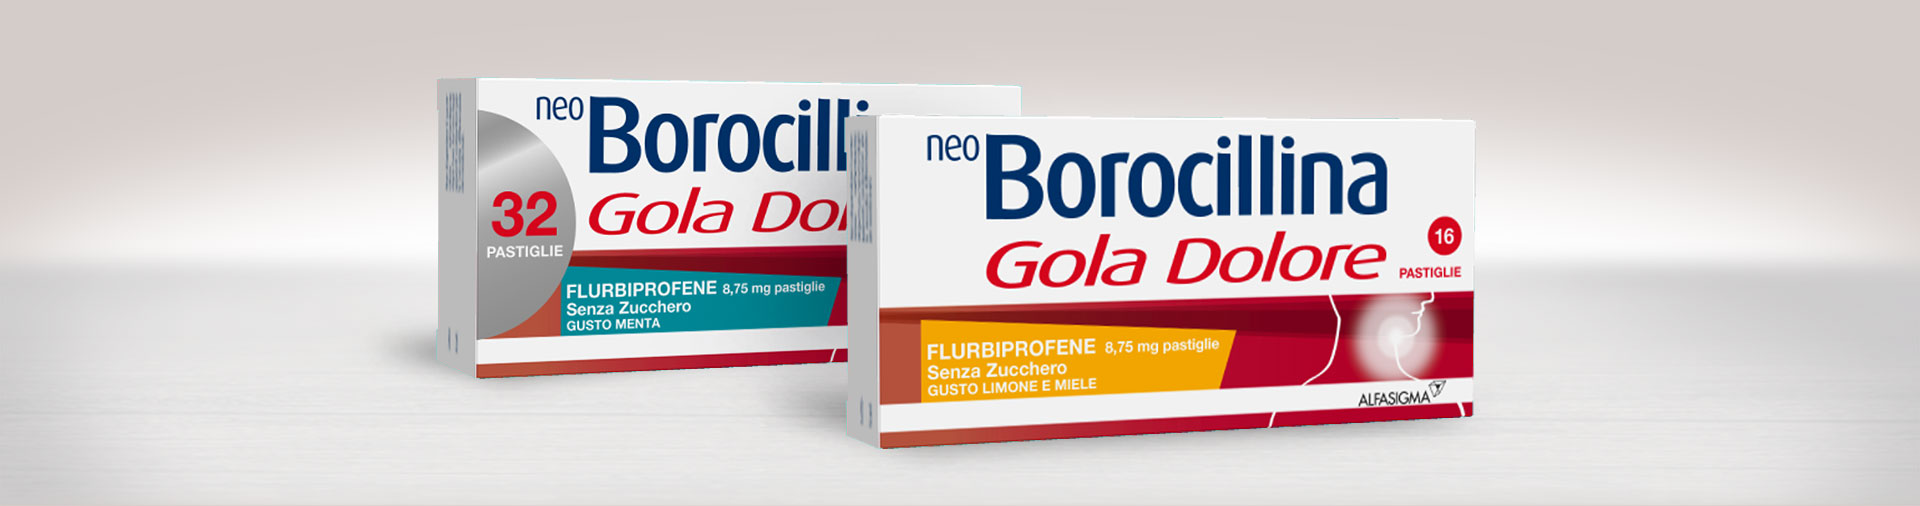 NeoBorocillina Gola dolore Pastiglie